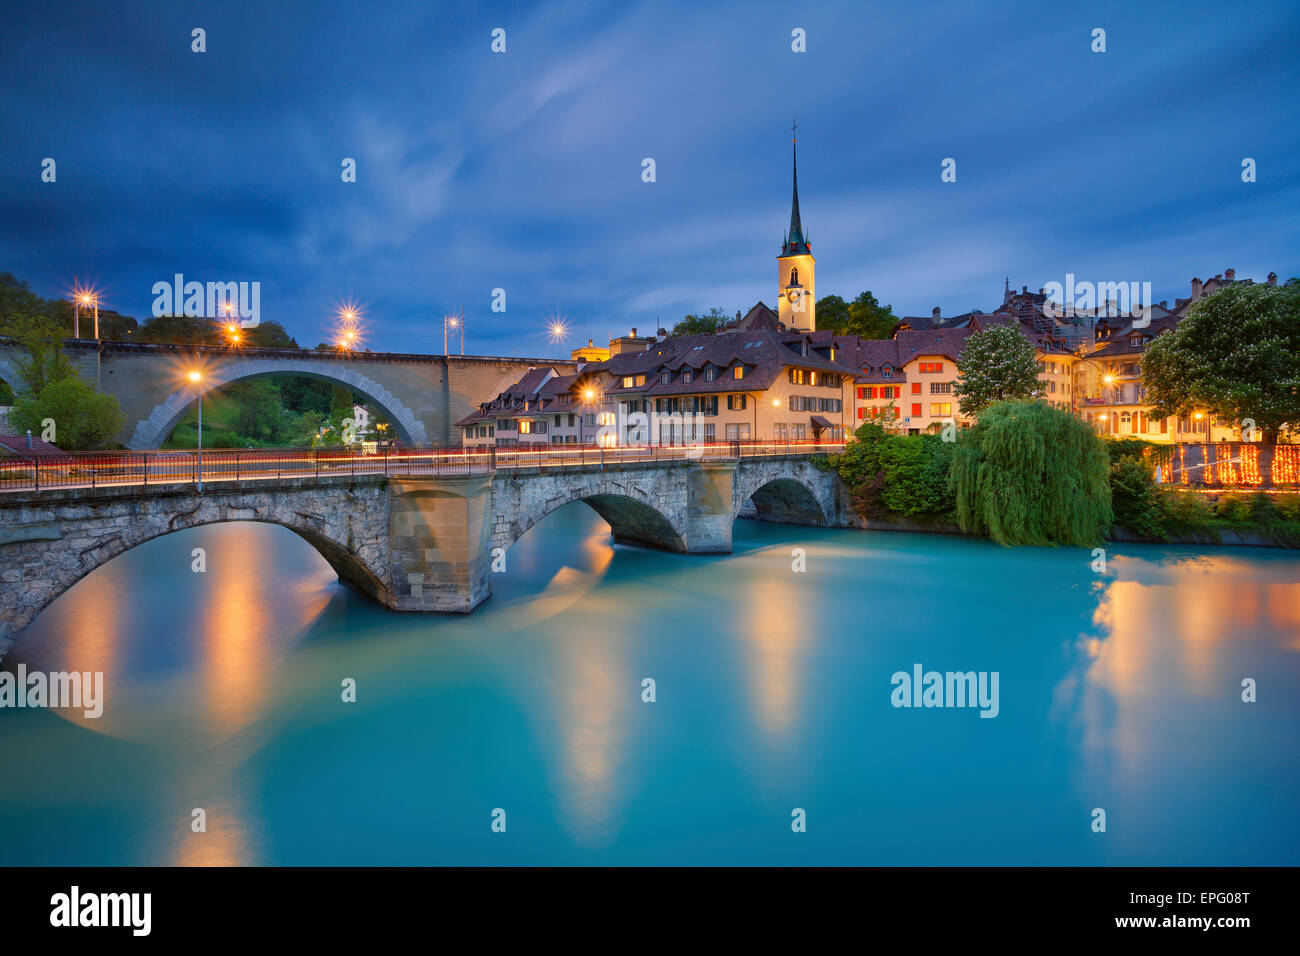 Berne. Image de Berne, capitale de la Suisse, pendant le crépuscule heure bleue. Banque D'Images